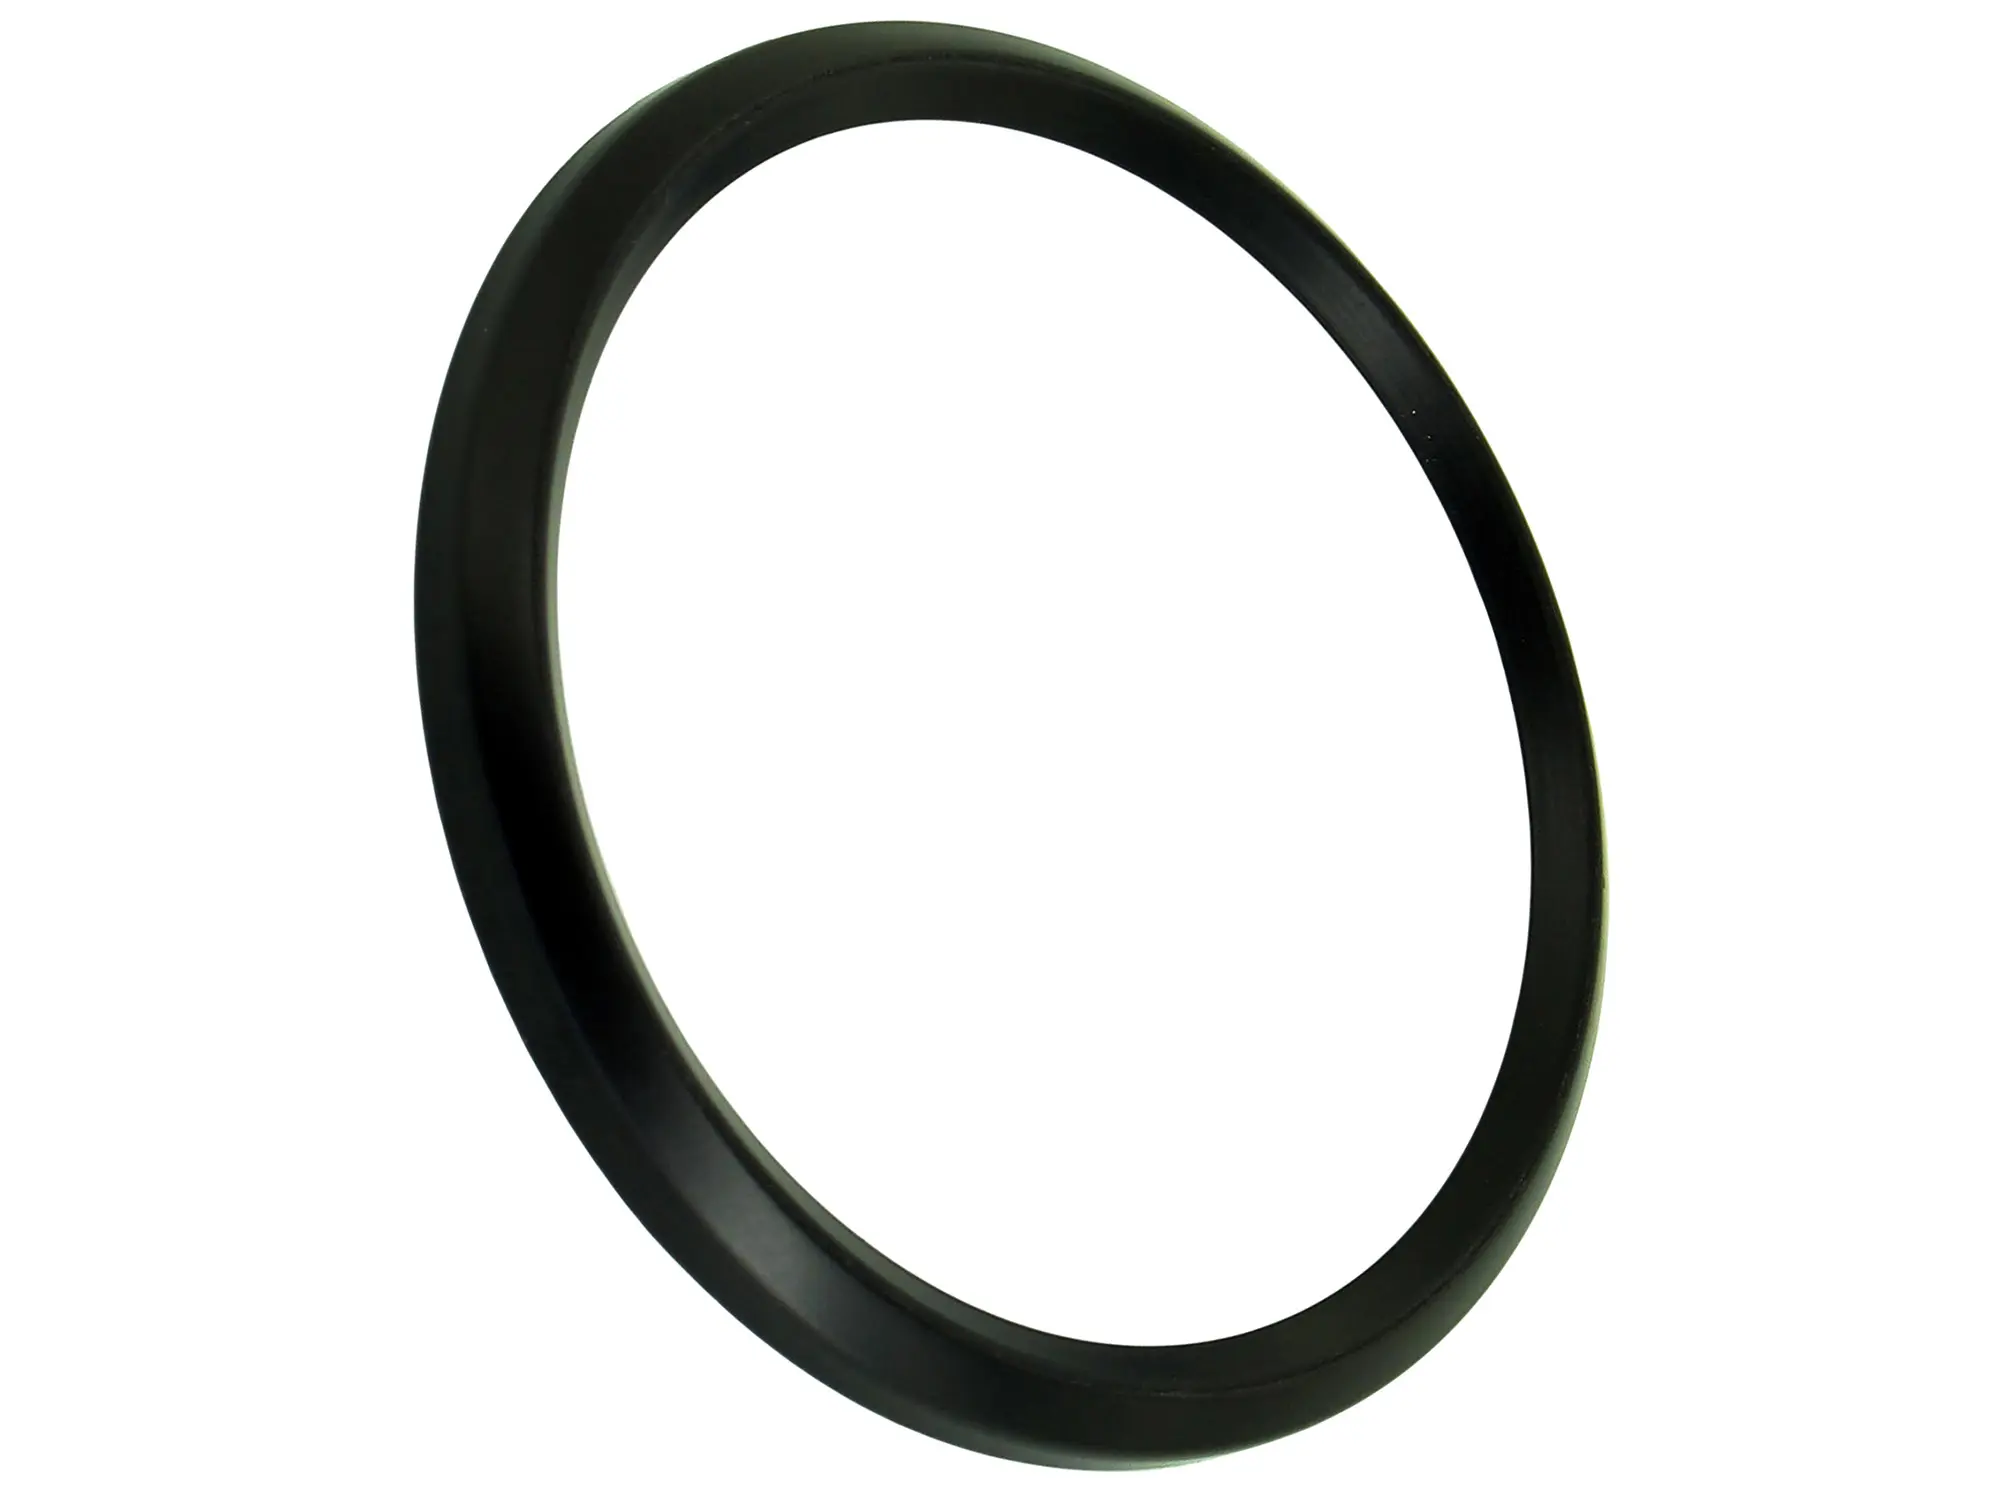 Frontring schwarz für Tachometer und DZM ETZ, TS, ETS (D=80mm), Art.-Nr.: 10044082 - Bild 1